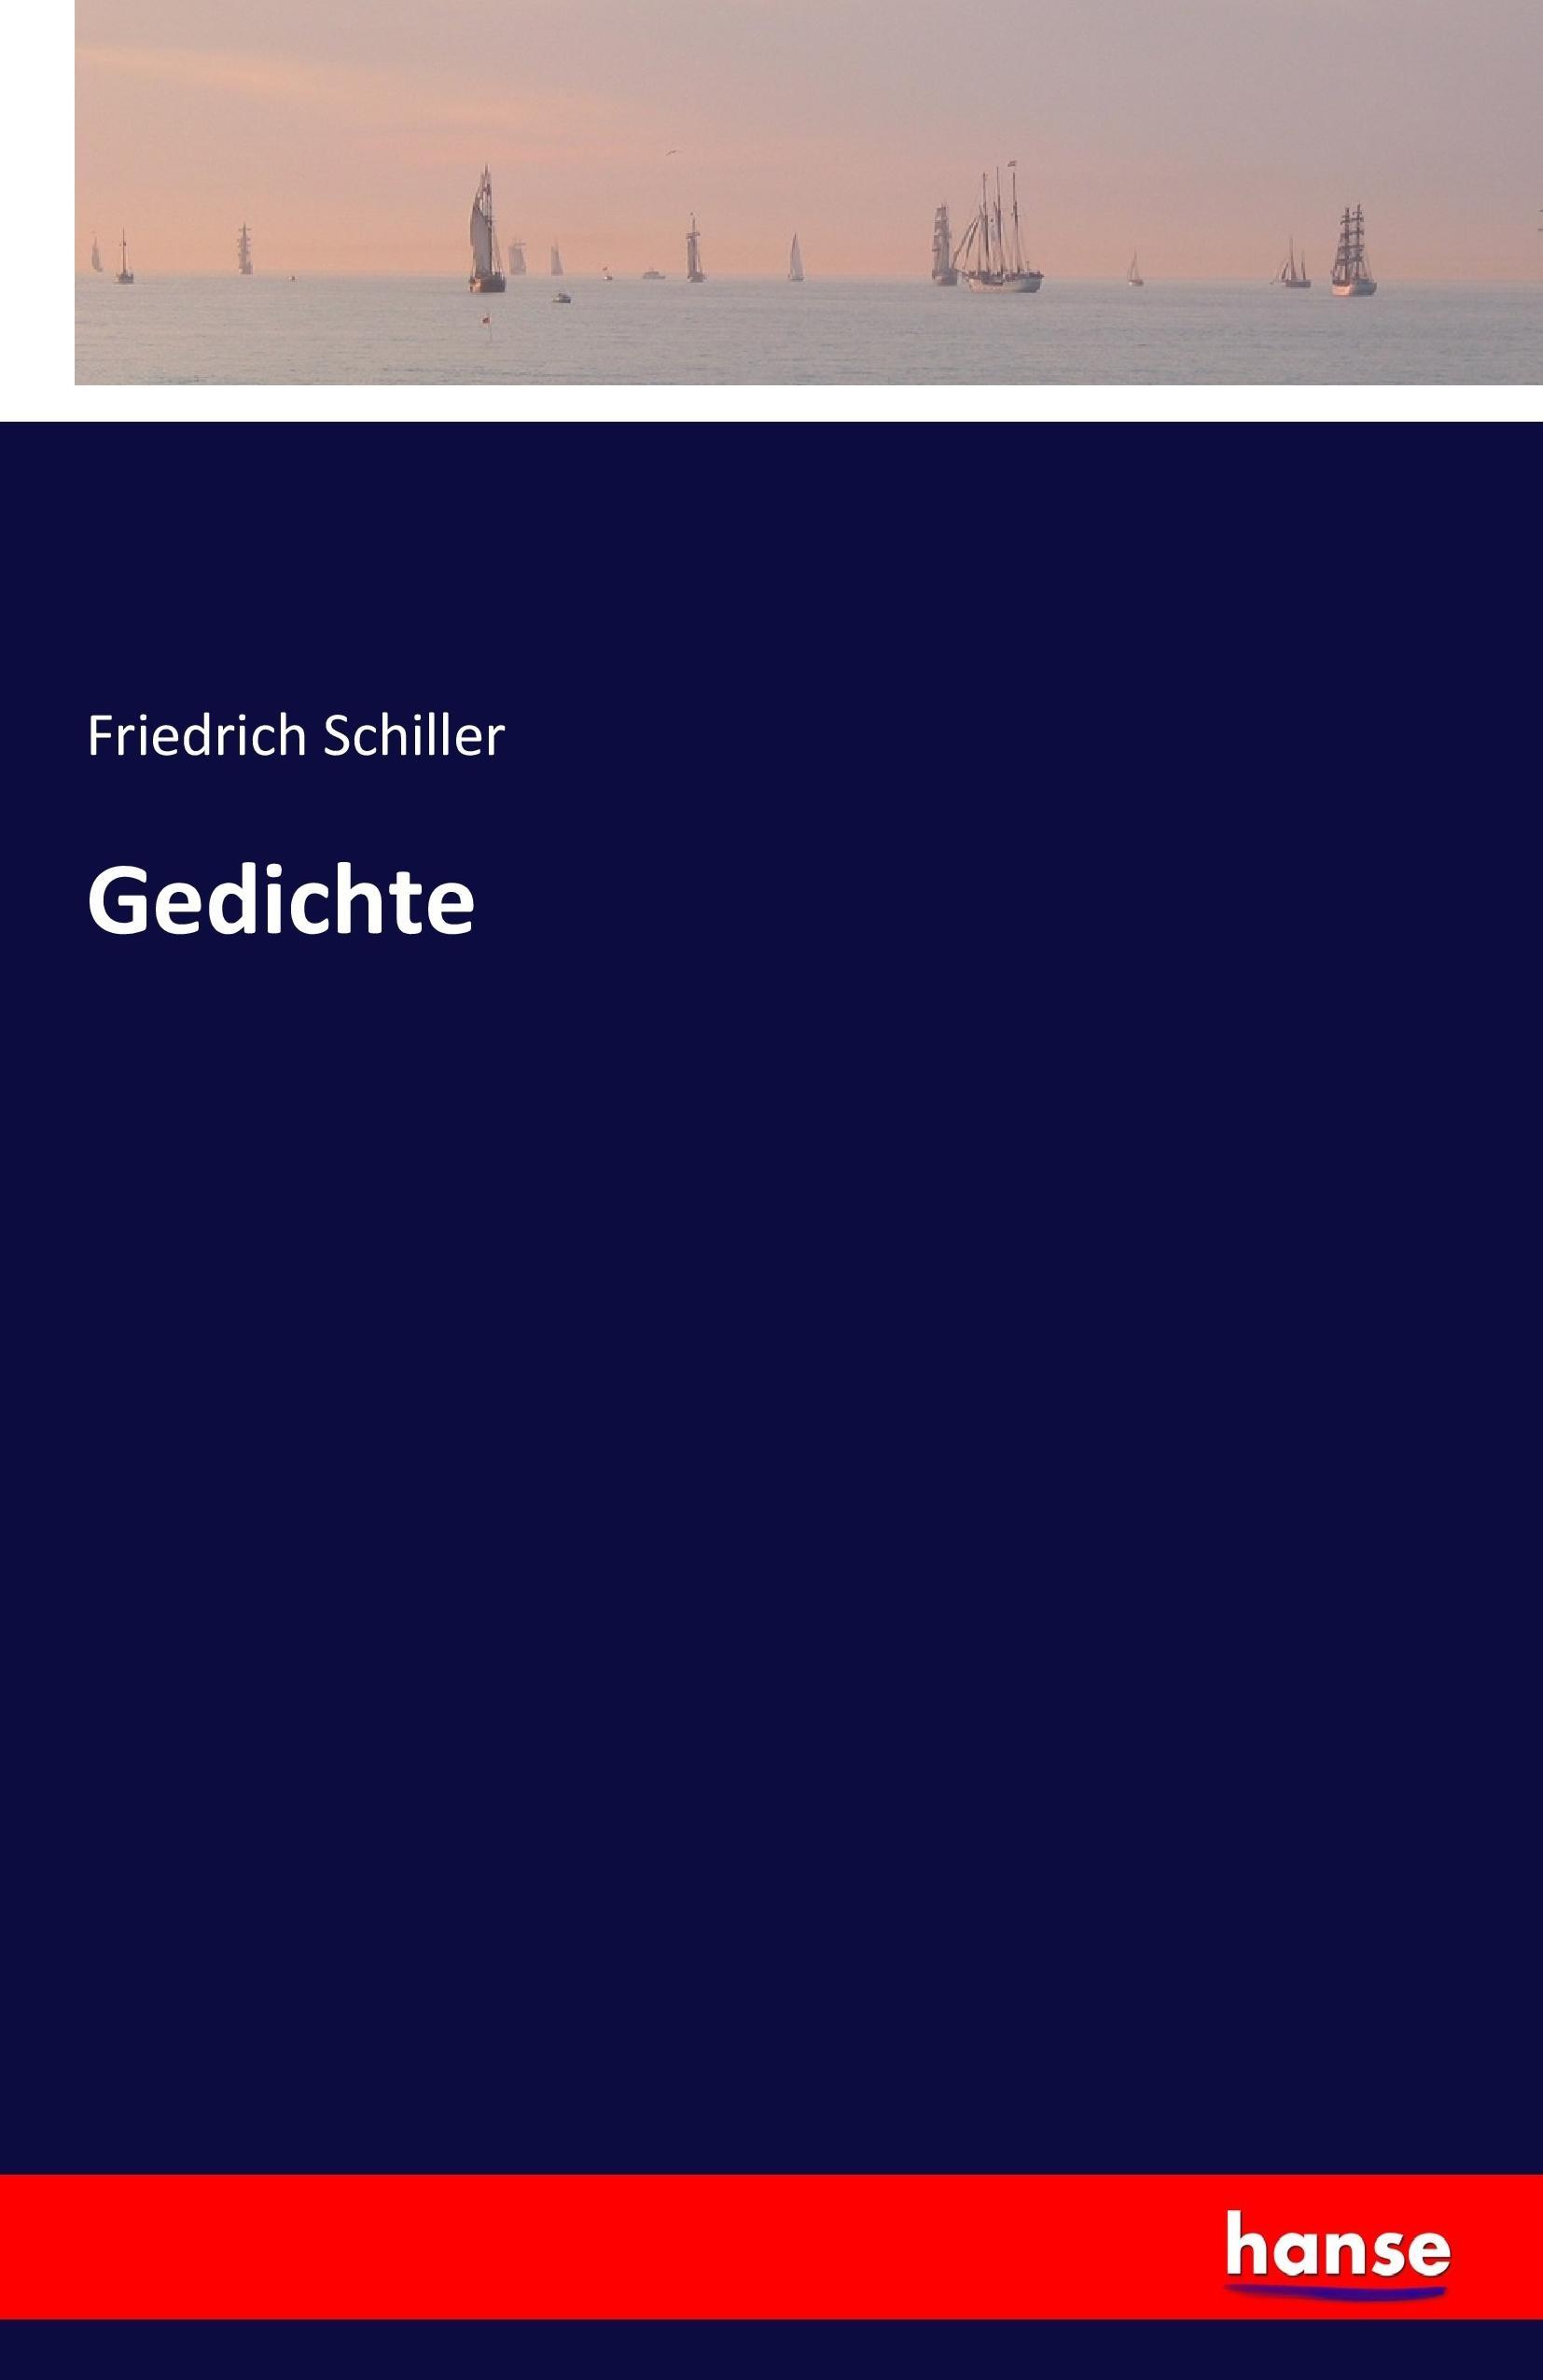 Gedichte / Friedrich Schiller / Taschenbuch / Paperback / 436 S. / Deutsch / 2017 / hansebooks / EAN 9783741150173 - Schiller, Friedrich